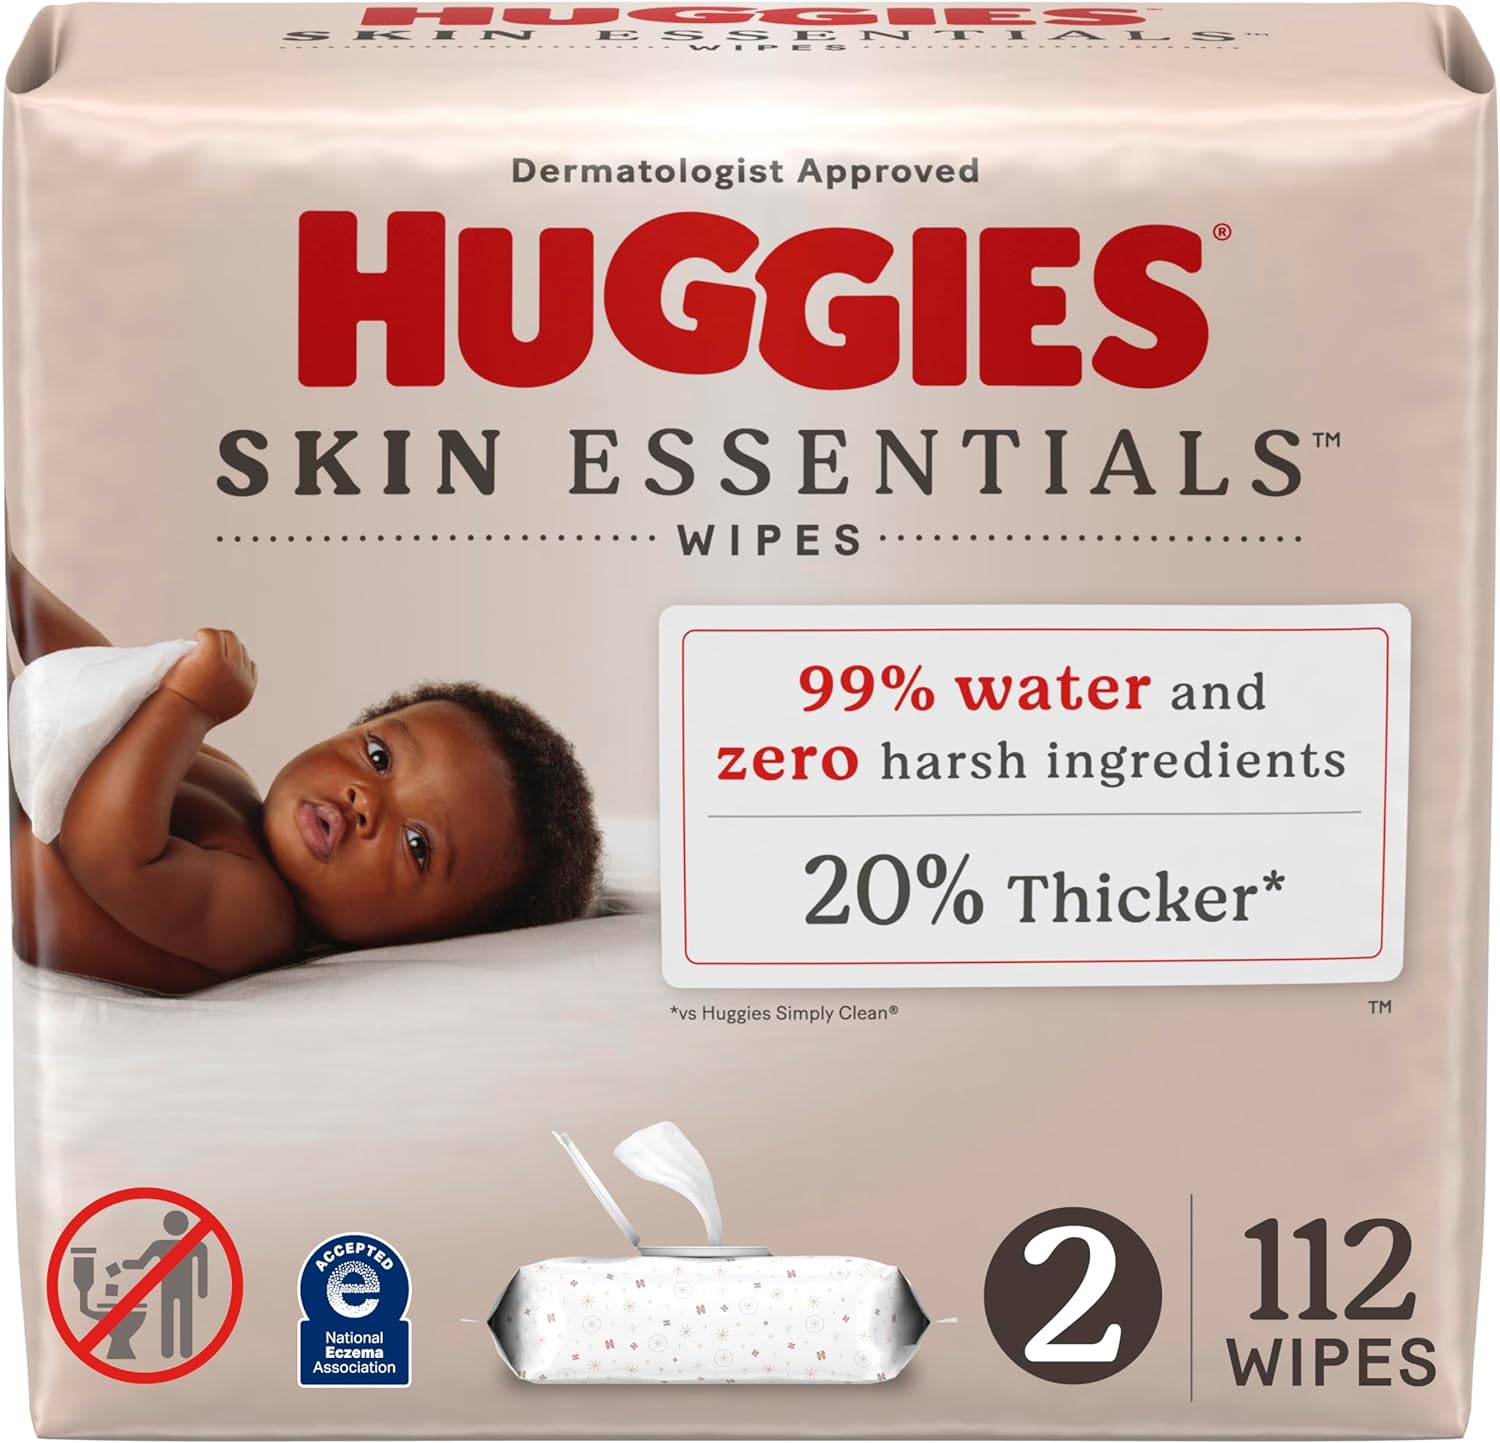 Huggies Skin Essentials Baby Wipes, Hypoallergenic, 99% Water, 2 Flip Top Packs (112 Wipes Total)